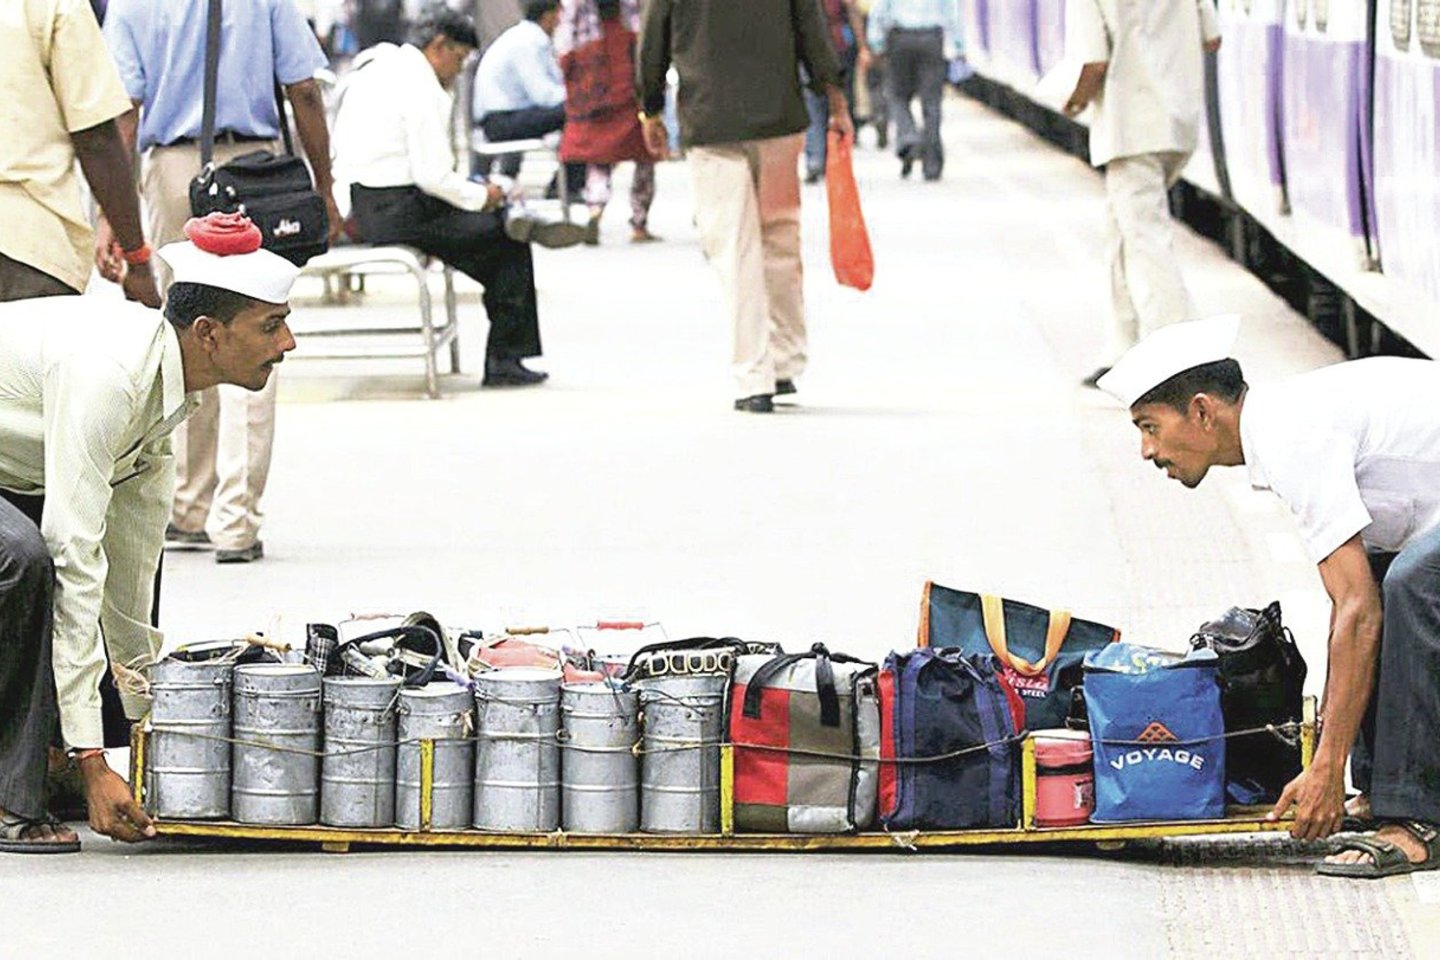 Indijoje veikianti pietų dėžučių išvežiojimo sistema laikoma tobula. Klaidų čia pasitaiko labai retai, nors kurjeriai nenaudoja jokių išmaniųjų technologijų ir yra beraščiai. Maistas gabenamas ir traukiniais.